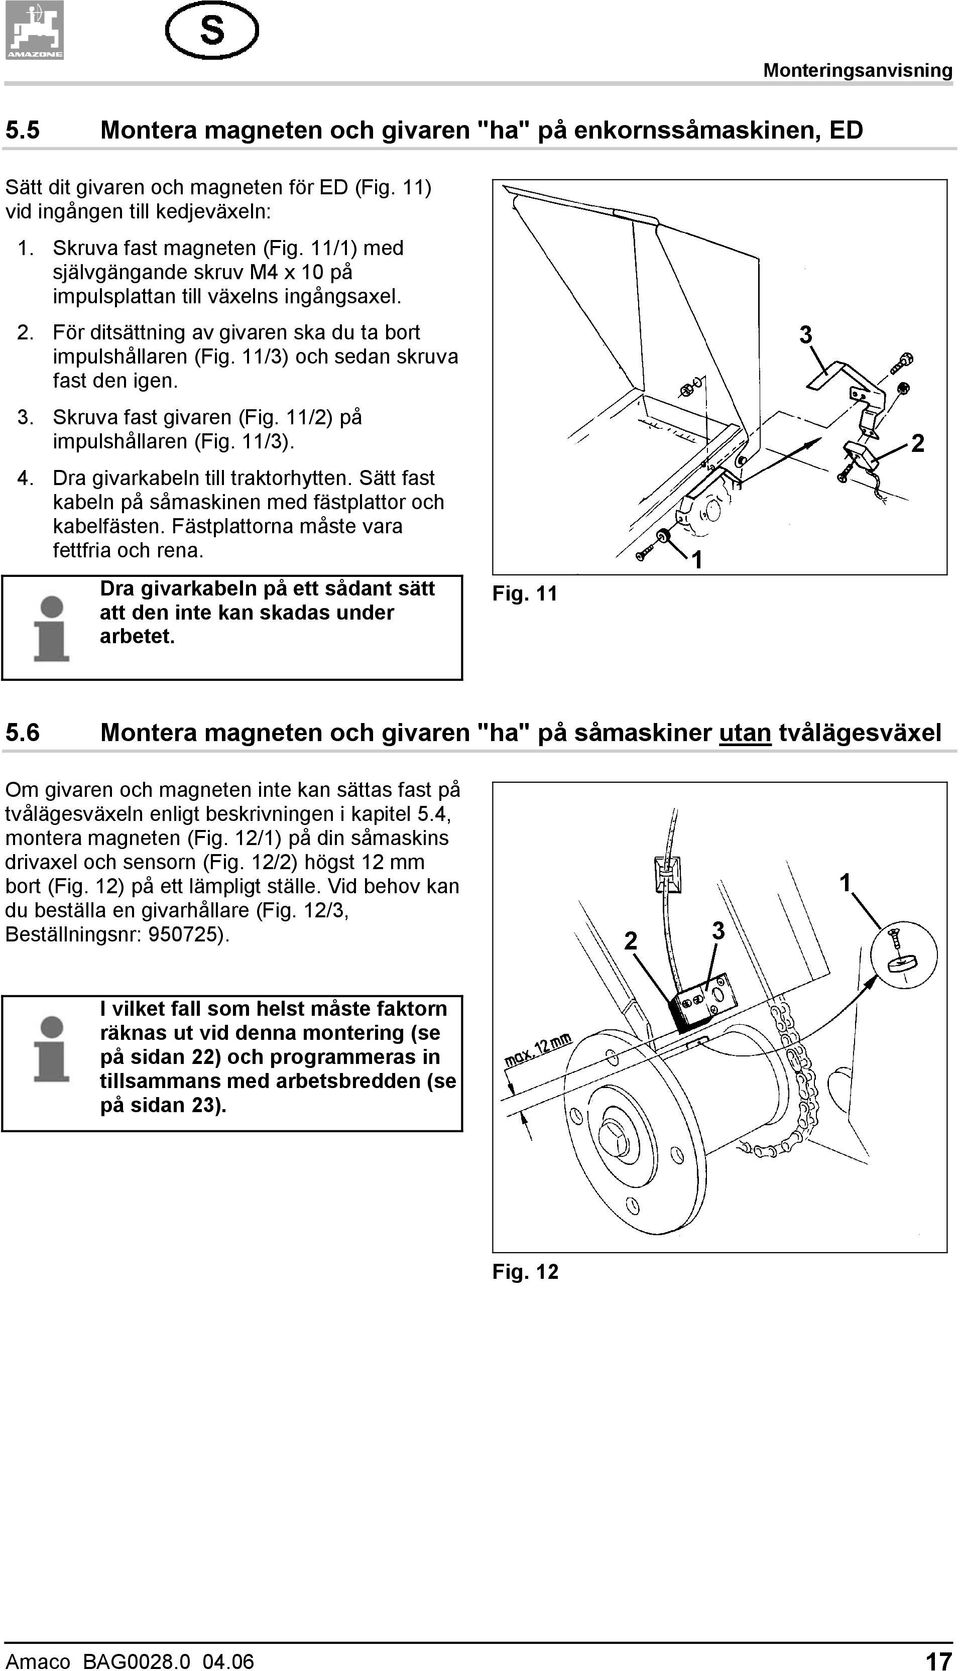 Skruva fast givaren (Fig. 11/2) på impulshållaren (Fig. 11/3). 4. Dra givarkabeln till traktorhytten. Sätt fast kabeln på såmaskinen med fästplattor och kabelfästen.